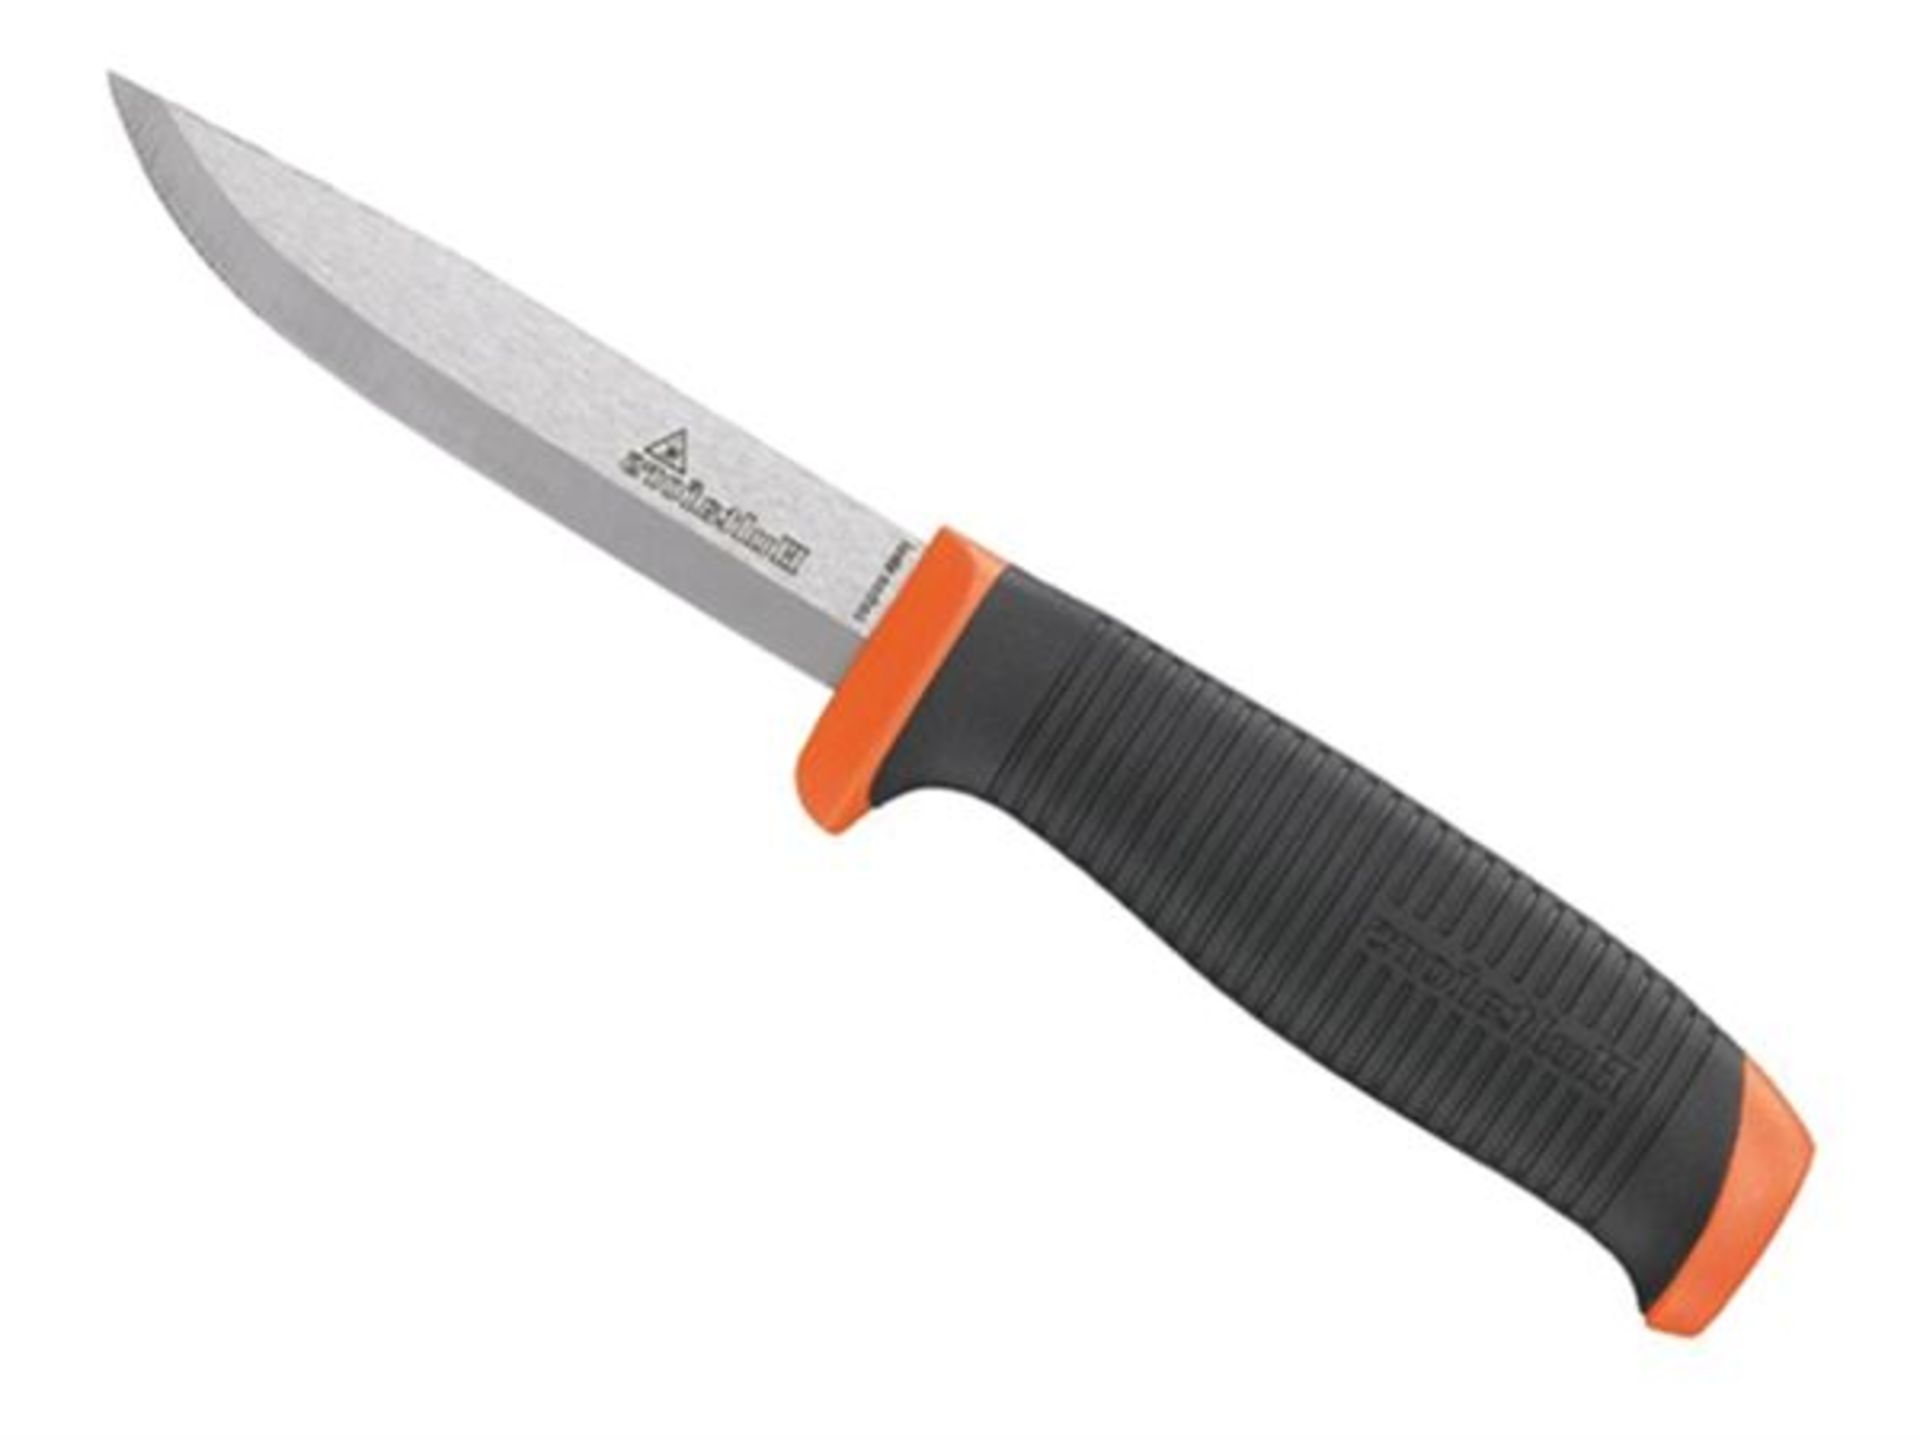 93mm Knife Craftsman